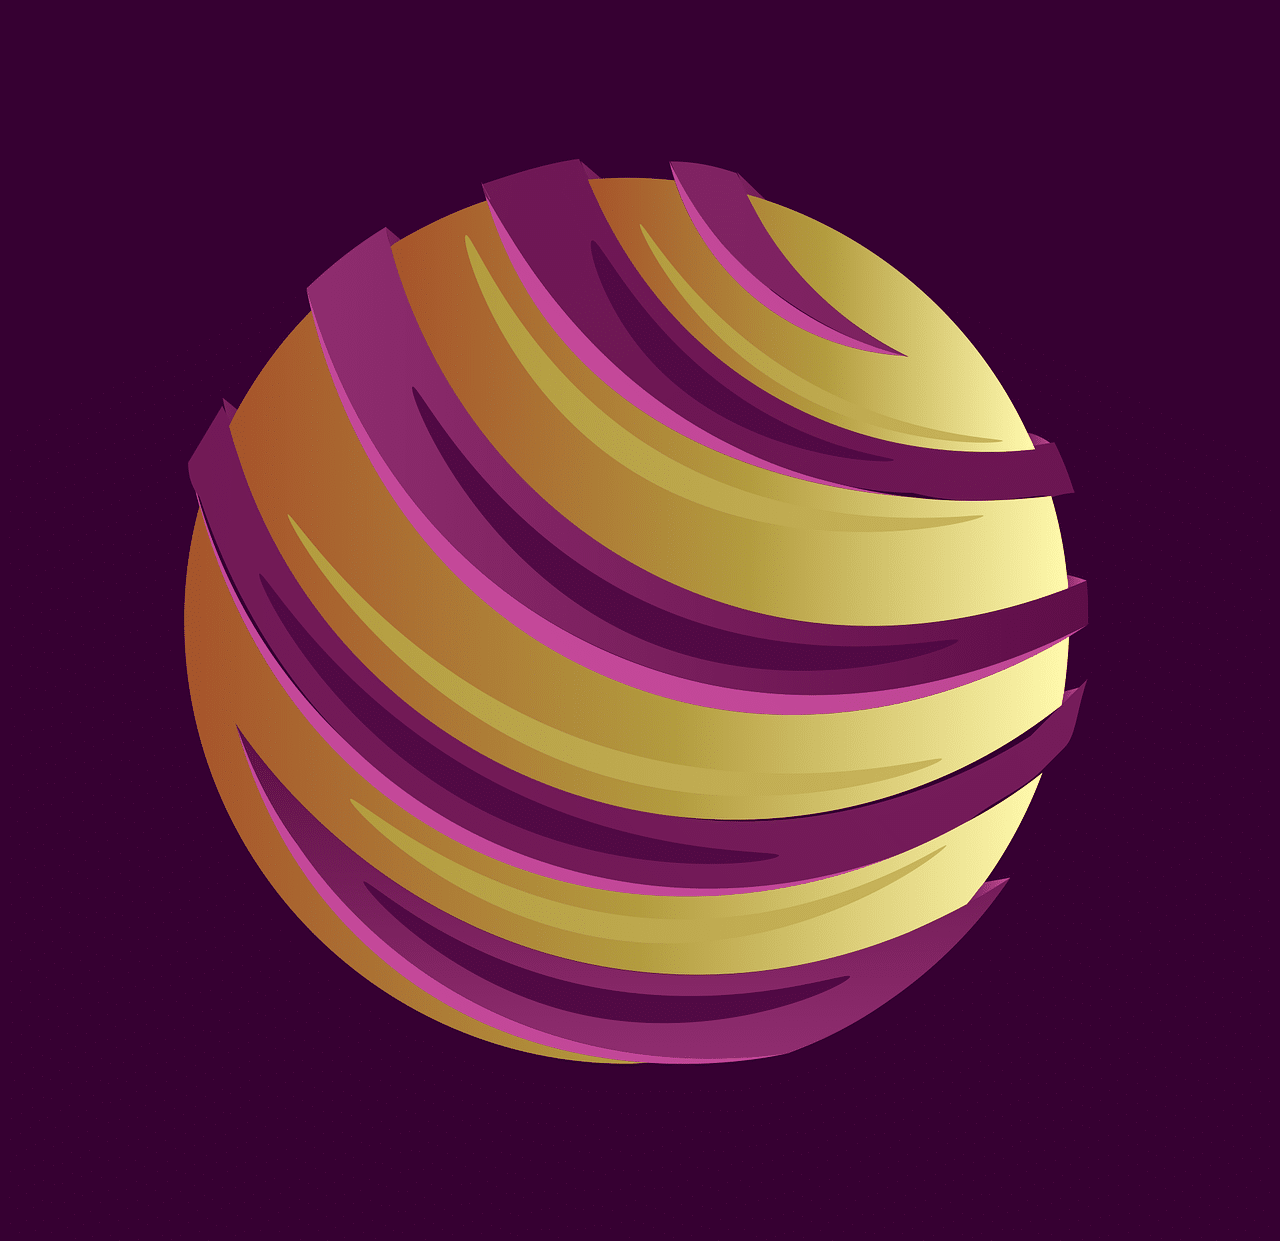 Dyson Spheres